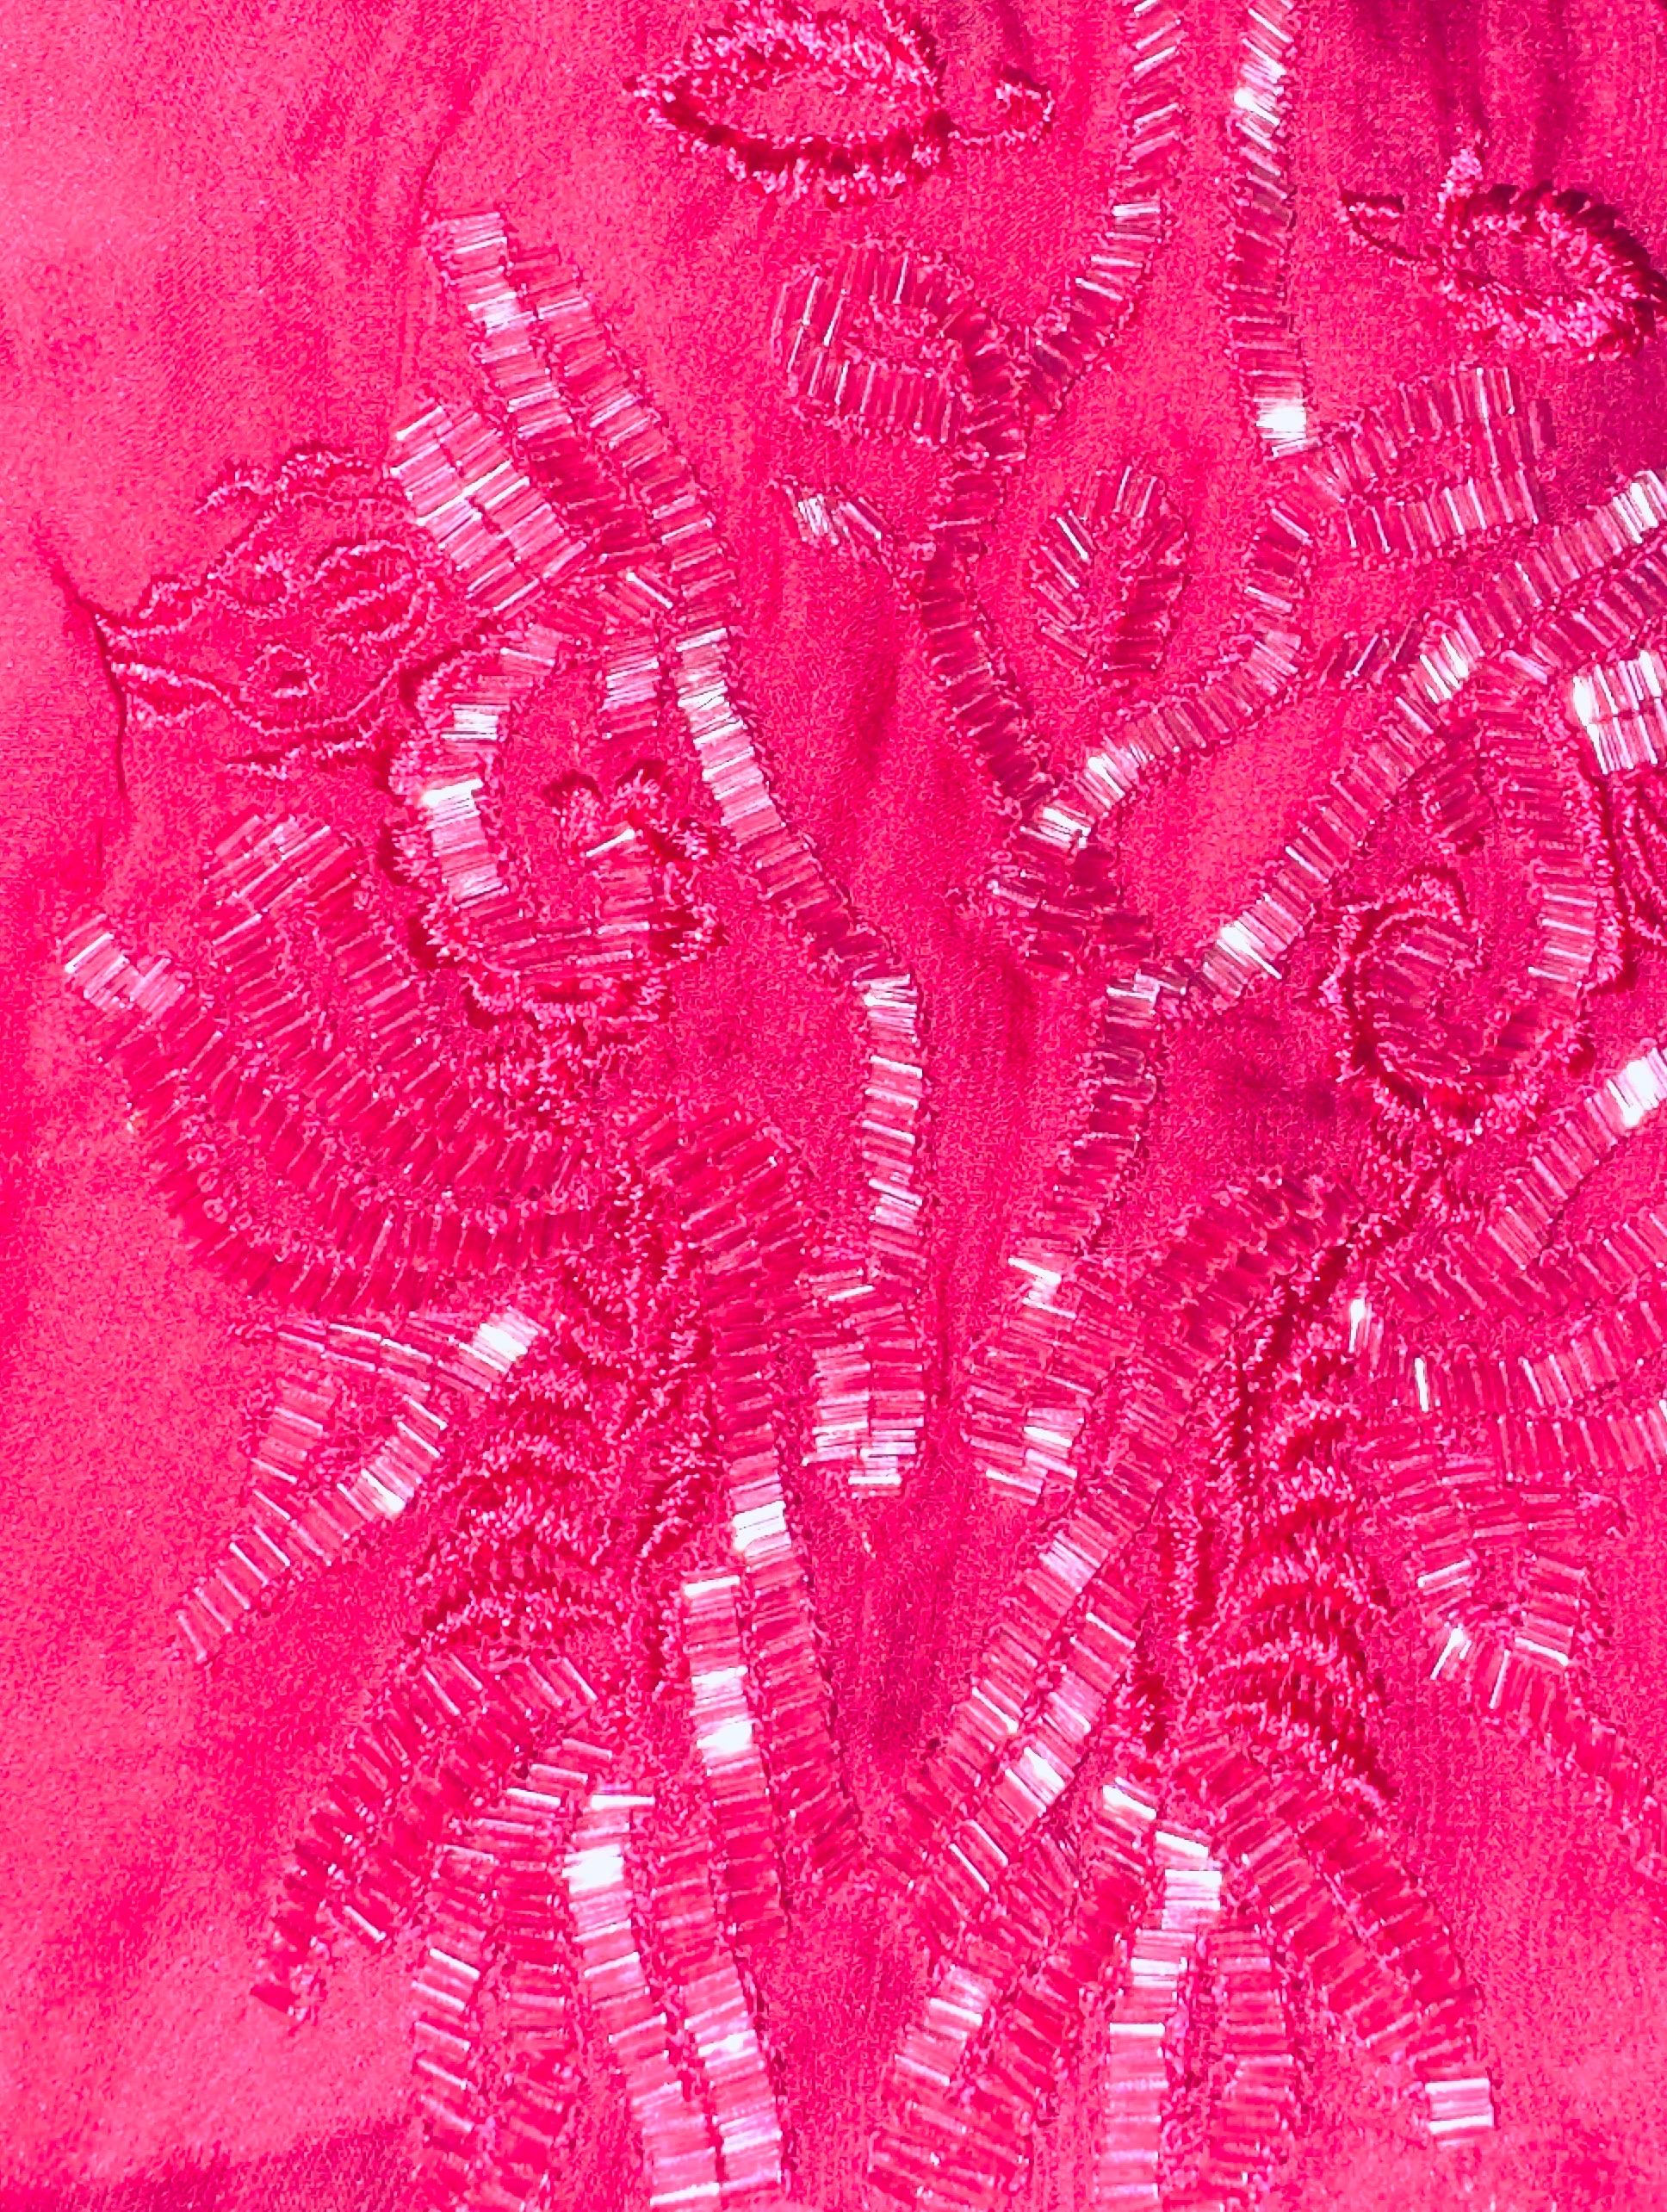 Robe de cocktail du soir exclusive EMILIO PUCCI !
Décoré d'ornements brodés à la main
Confectionné en luxueuse soie cady et mousseline de soie
Une couleur rose étonnante
Nettoyage à sec uniquement
Fabriqué en Italie
Prix de détail 5199$ plus